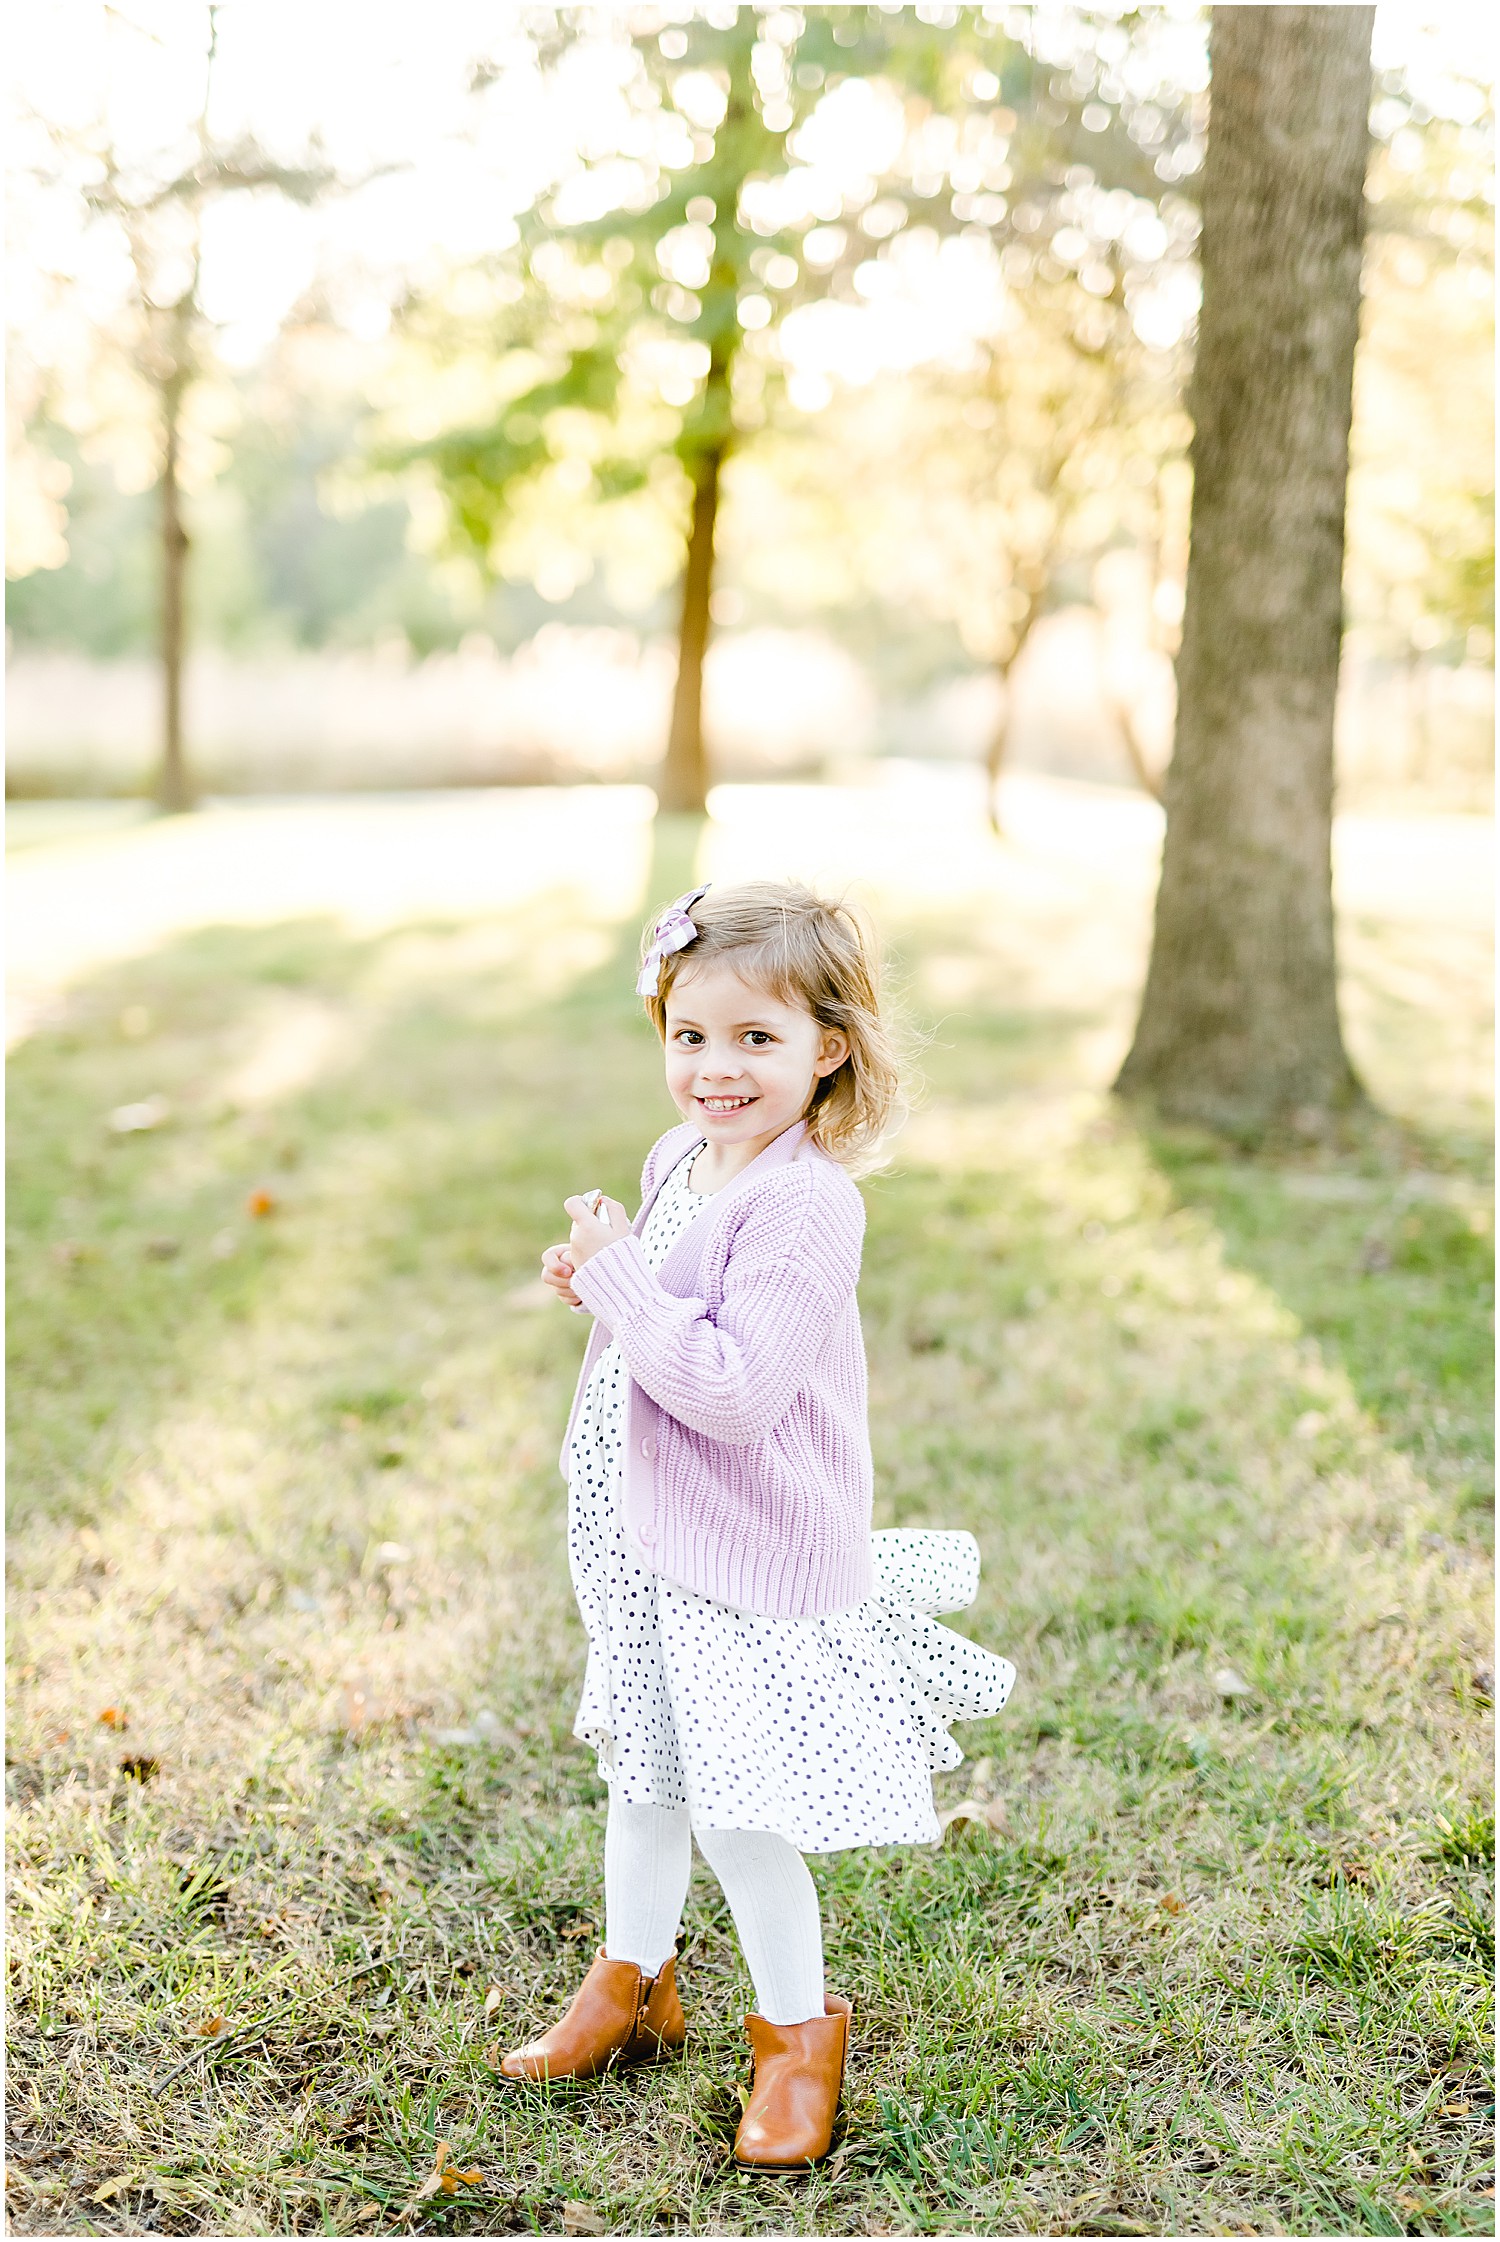 little girl spinning in dress smiling under trees sunlight